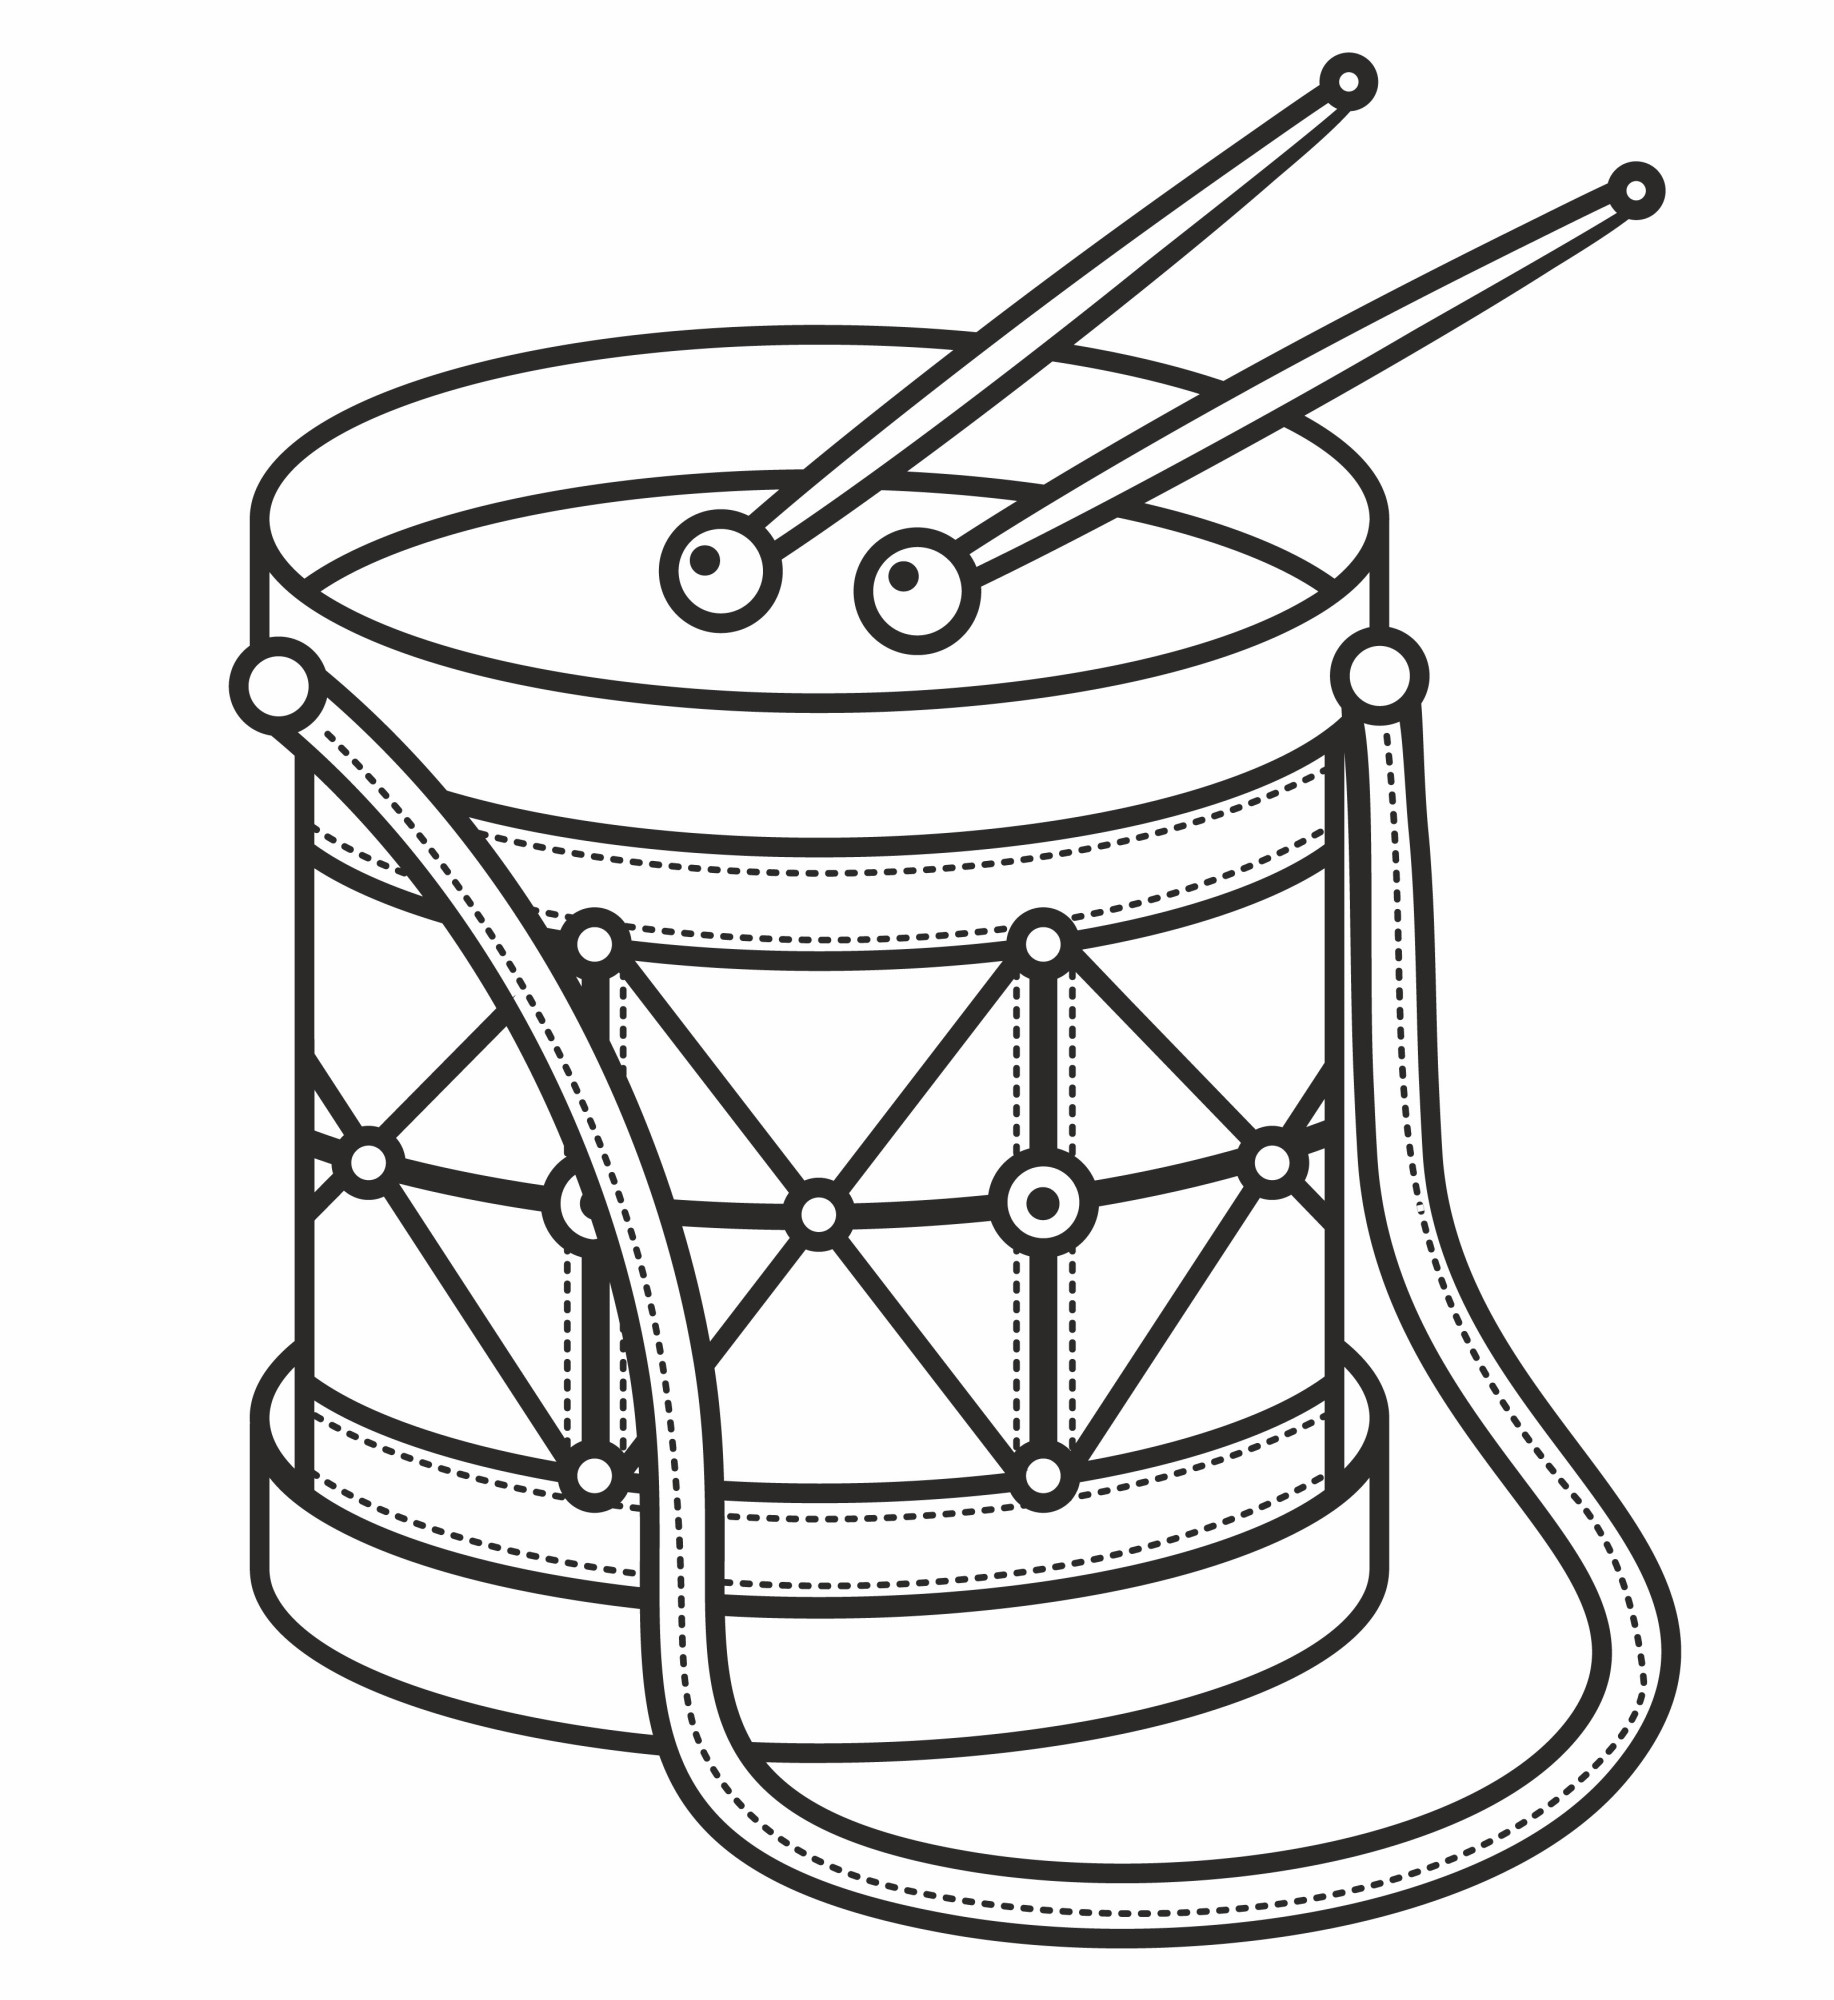 Раскраска для детей: музыкальный инструмент барабан игрушка